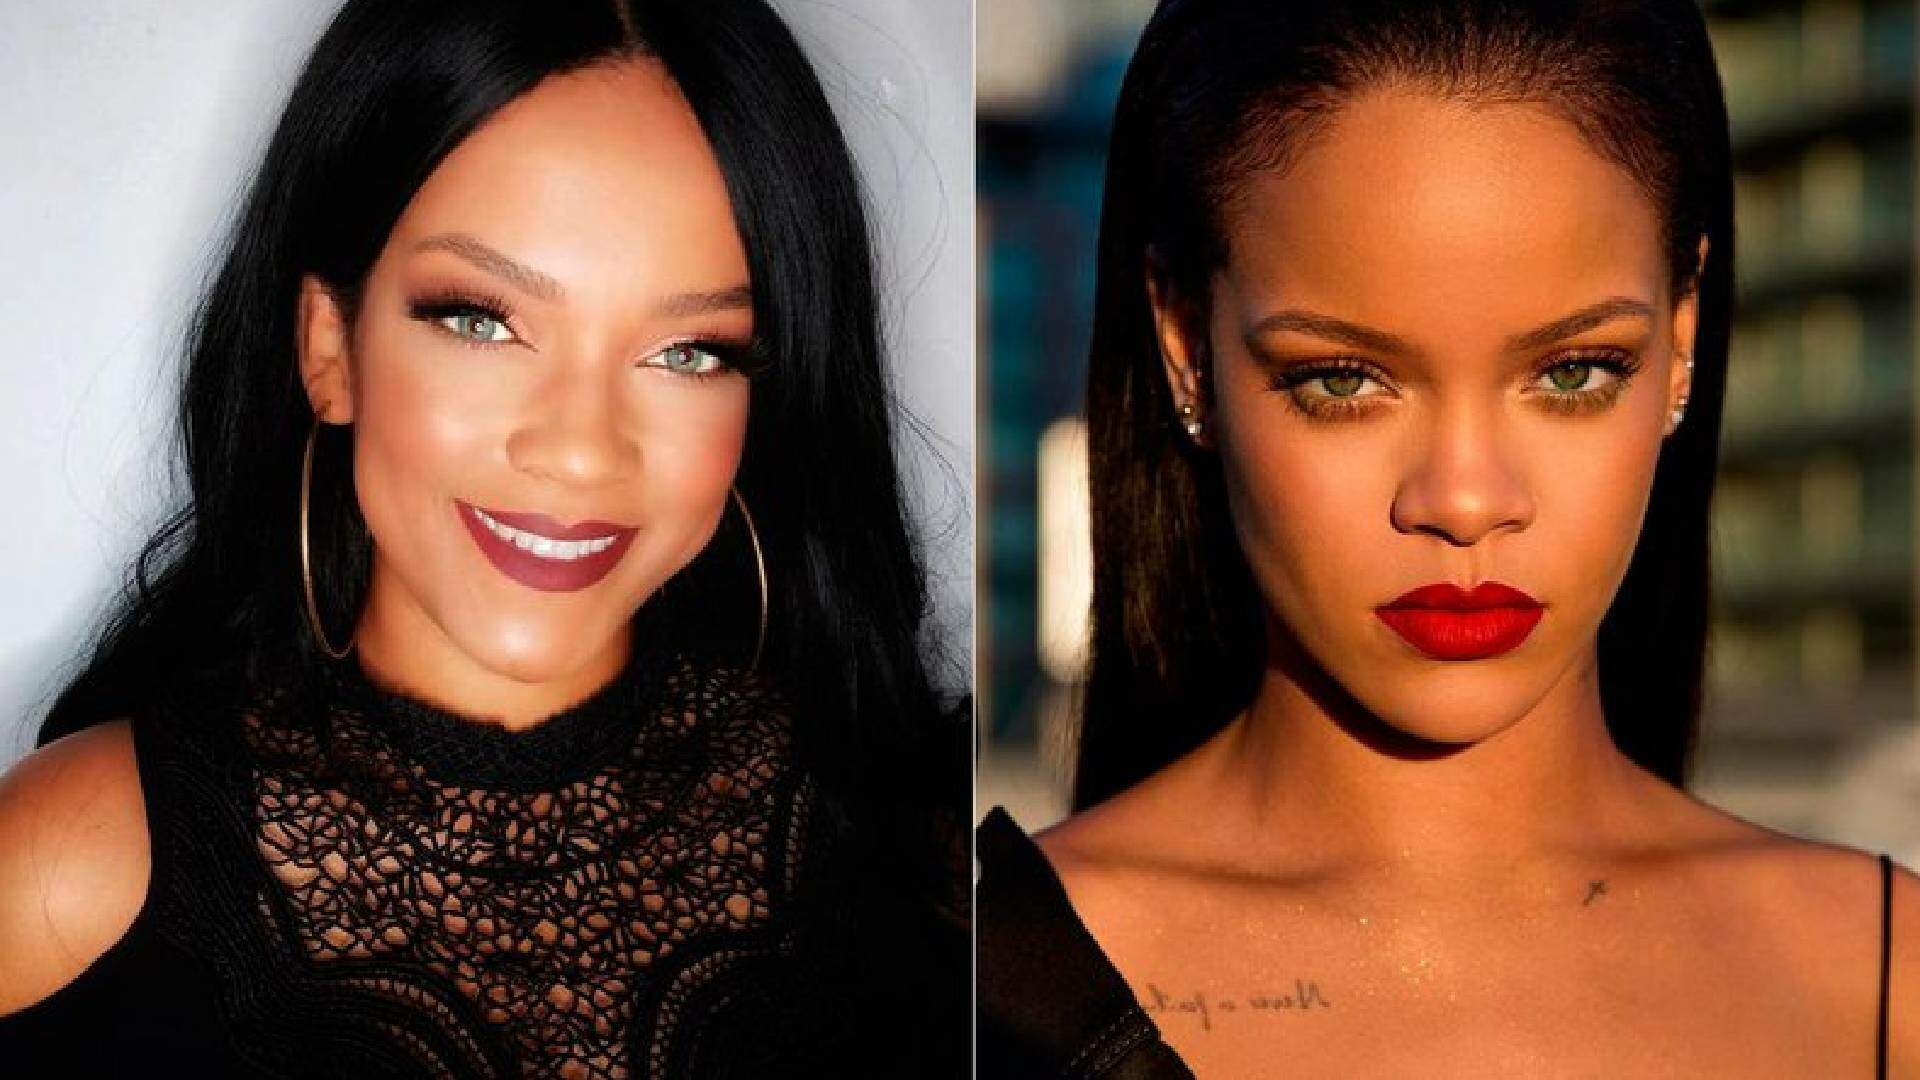 Não é a Rihanna? Vídeo da artista como torcedora na Copa confunde fãs com sósia brasileira - Metropolitana FM